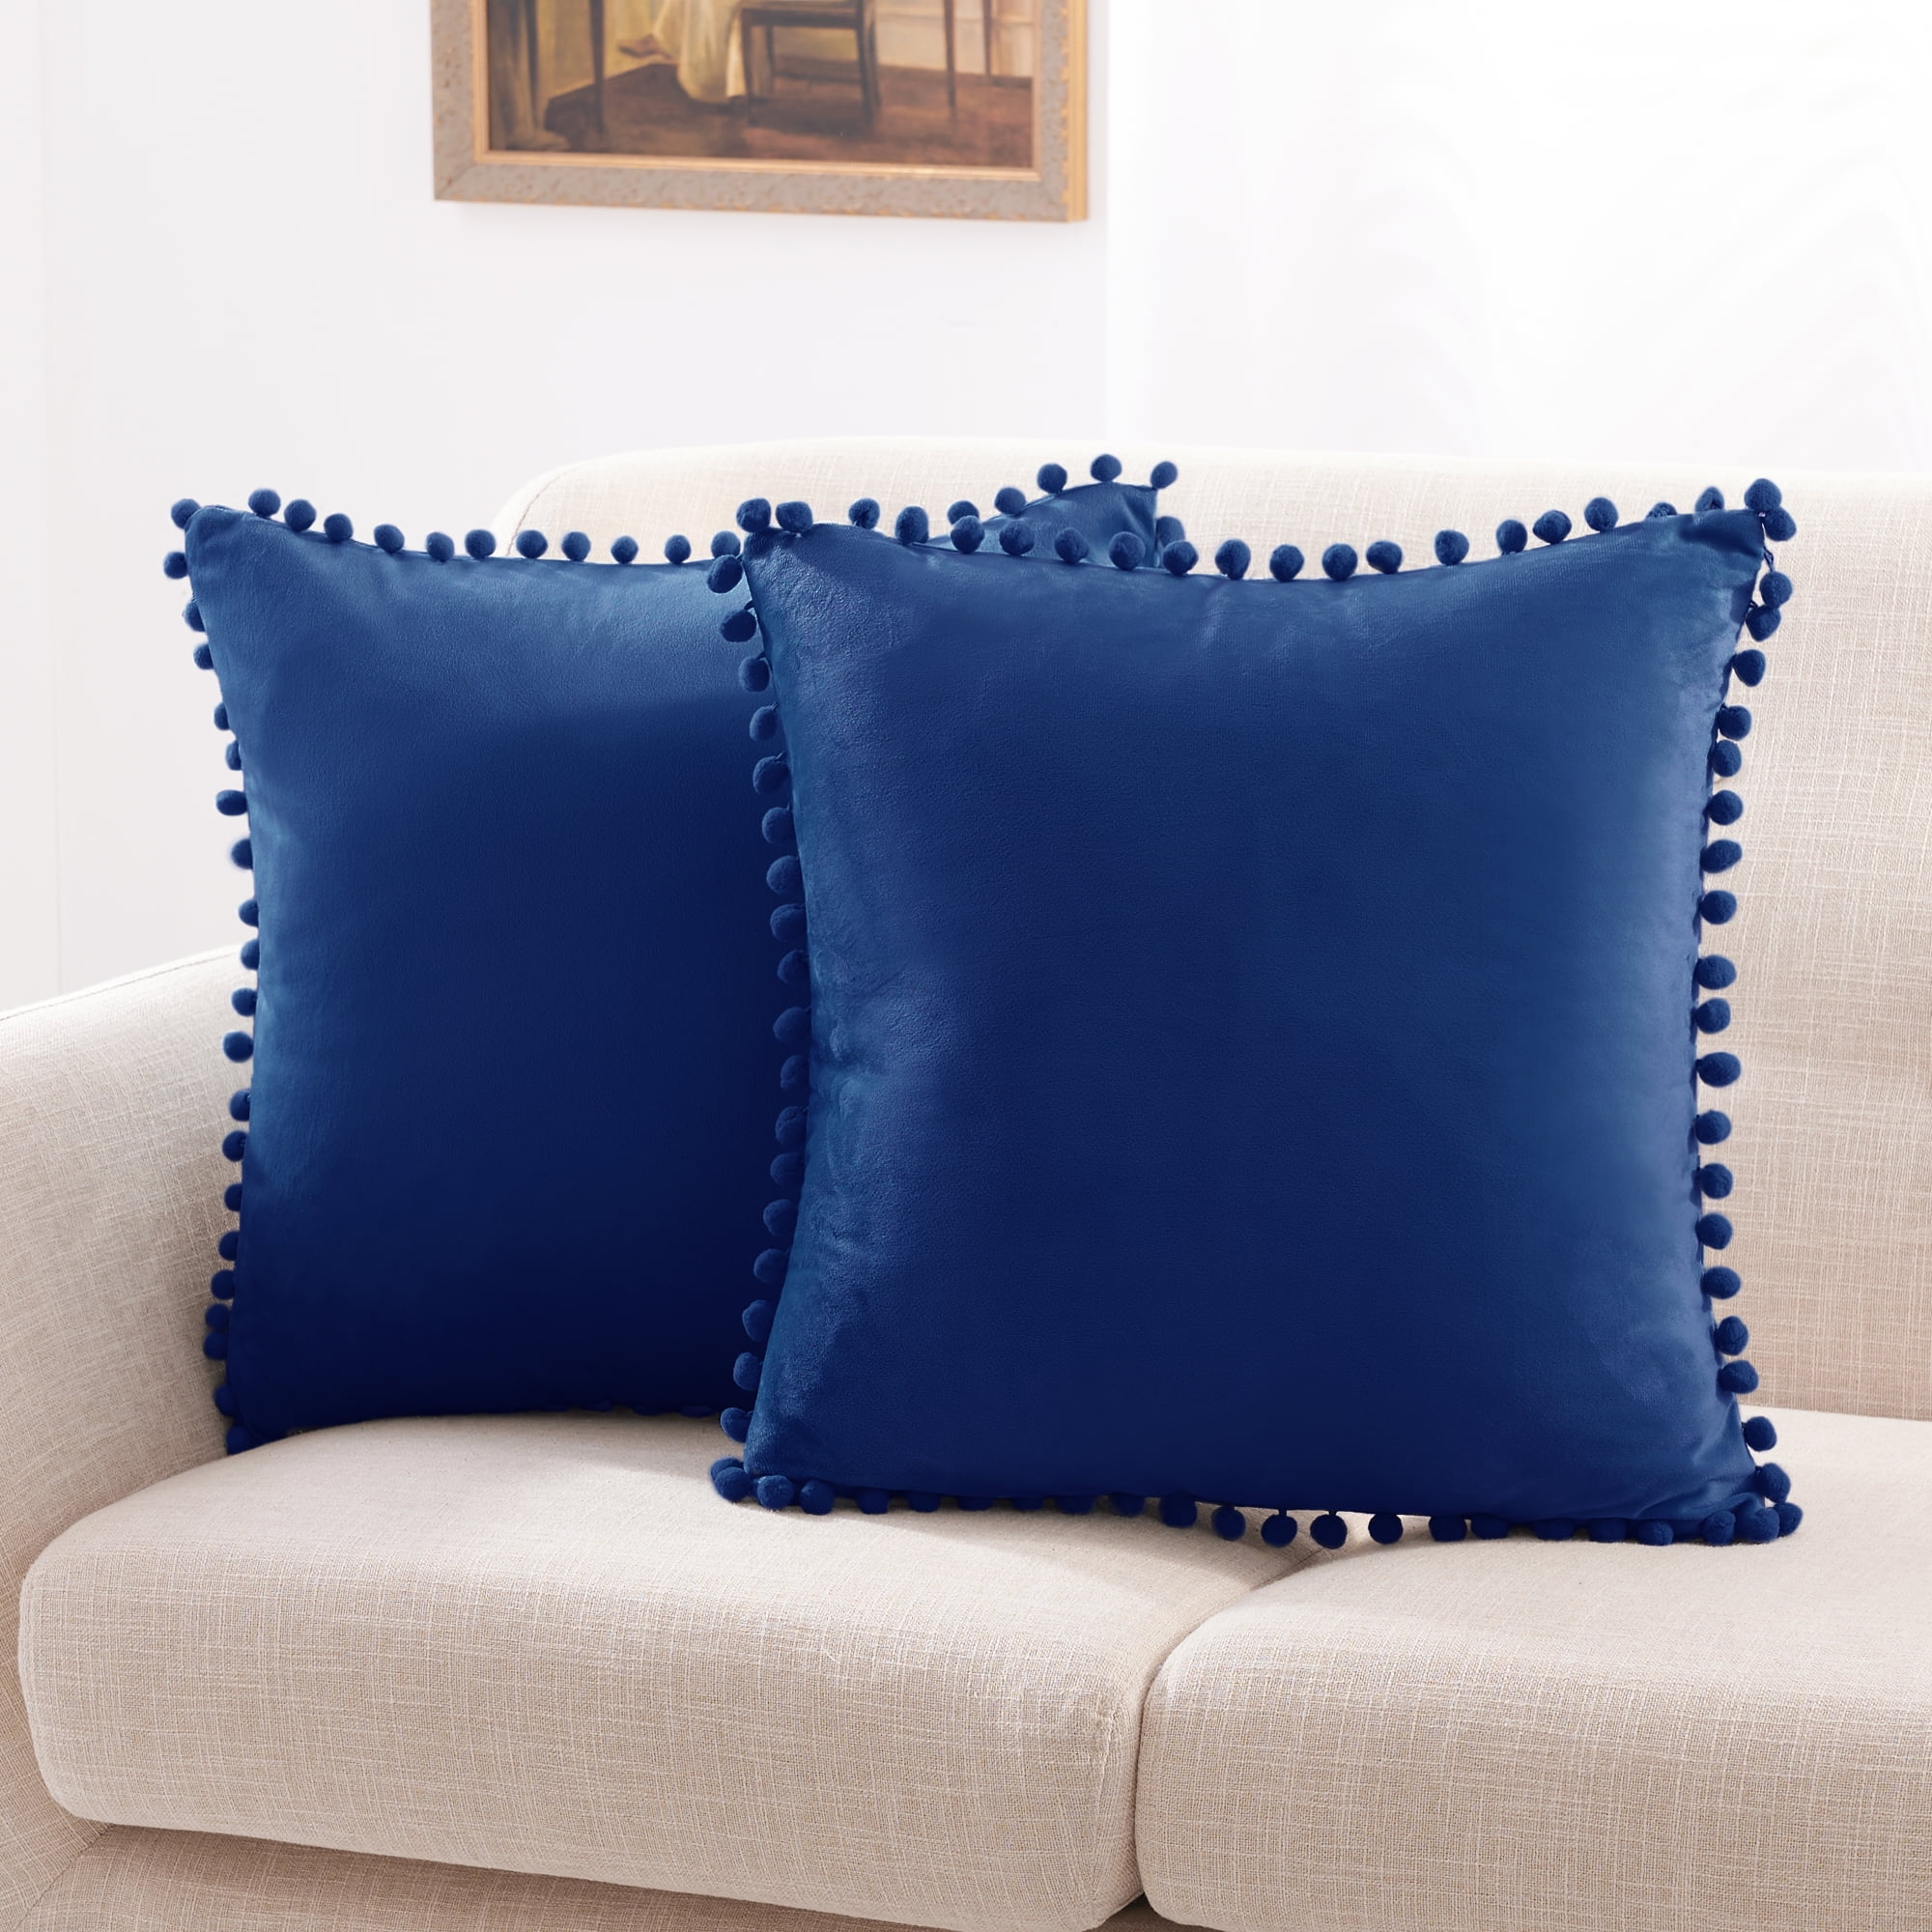 aqua velvet pillow cover luxury velvet design on both sides lumbar  pillow cover Blue velvet pillow cover with fringe trim